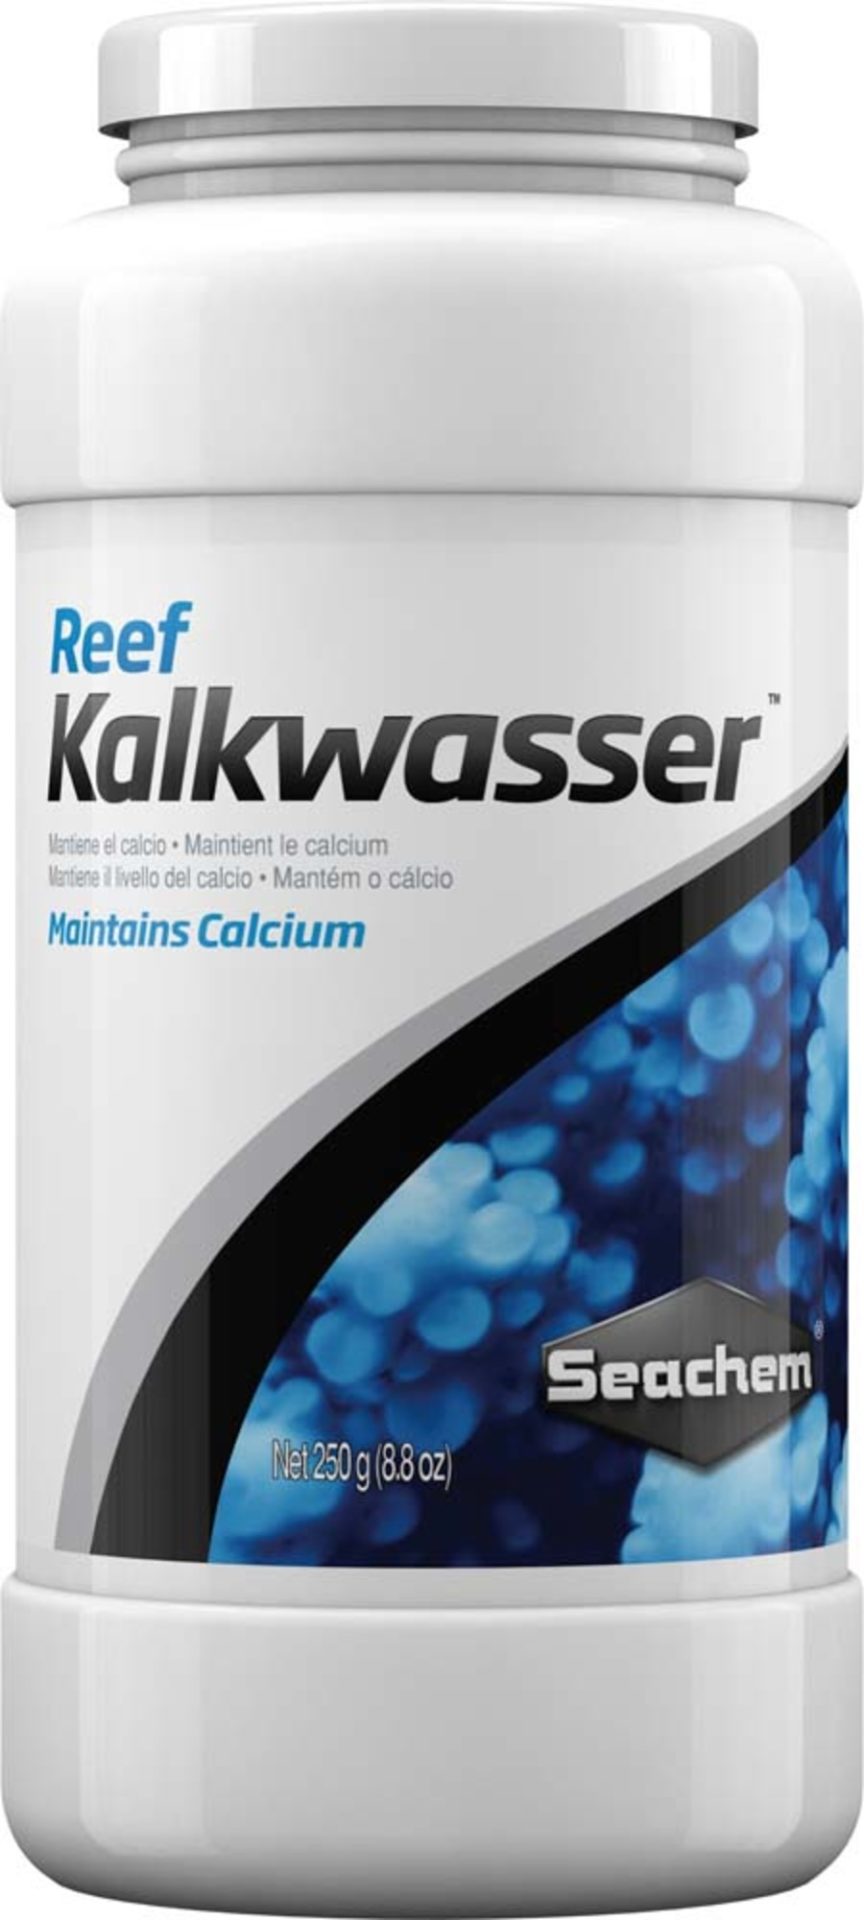 Reef Kalkwasser Powder - Seachem